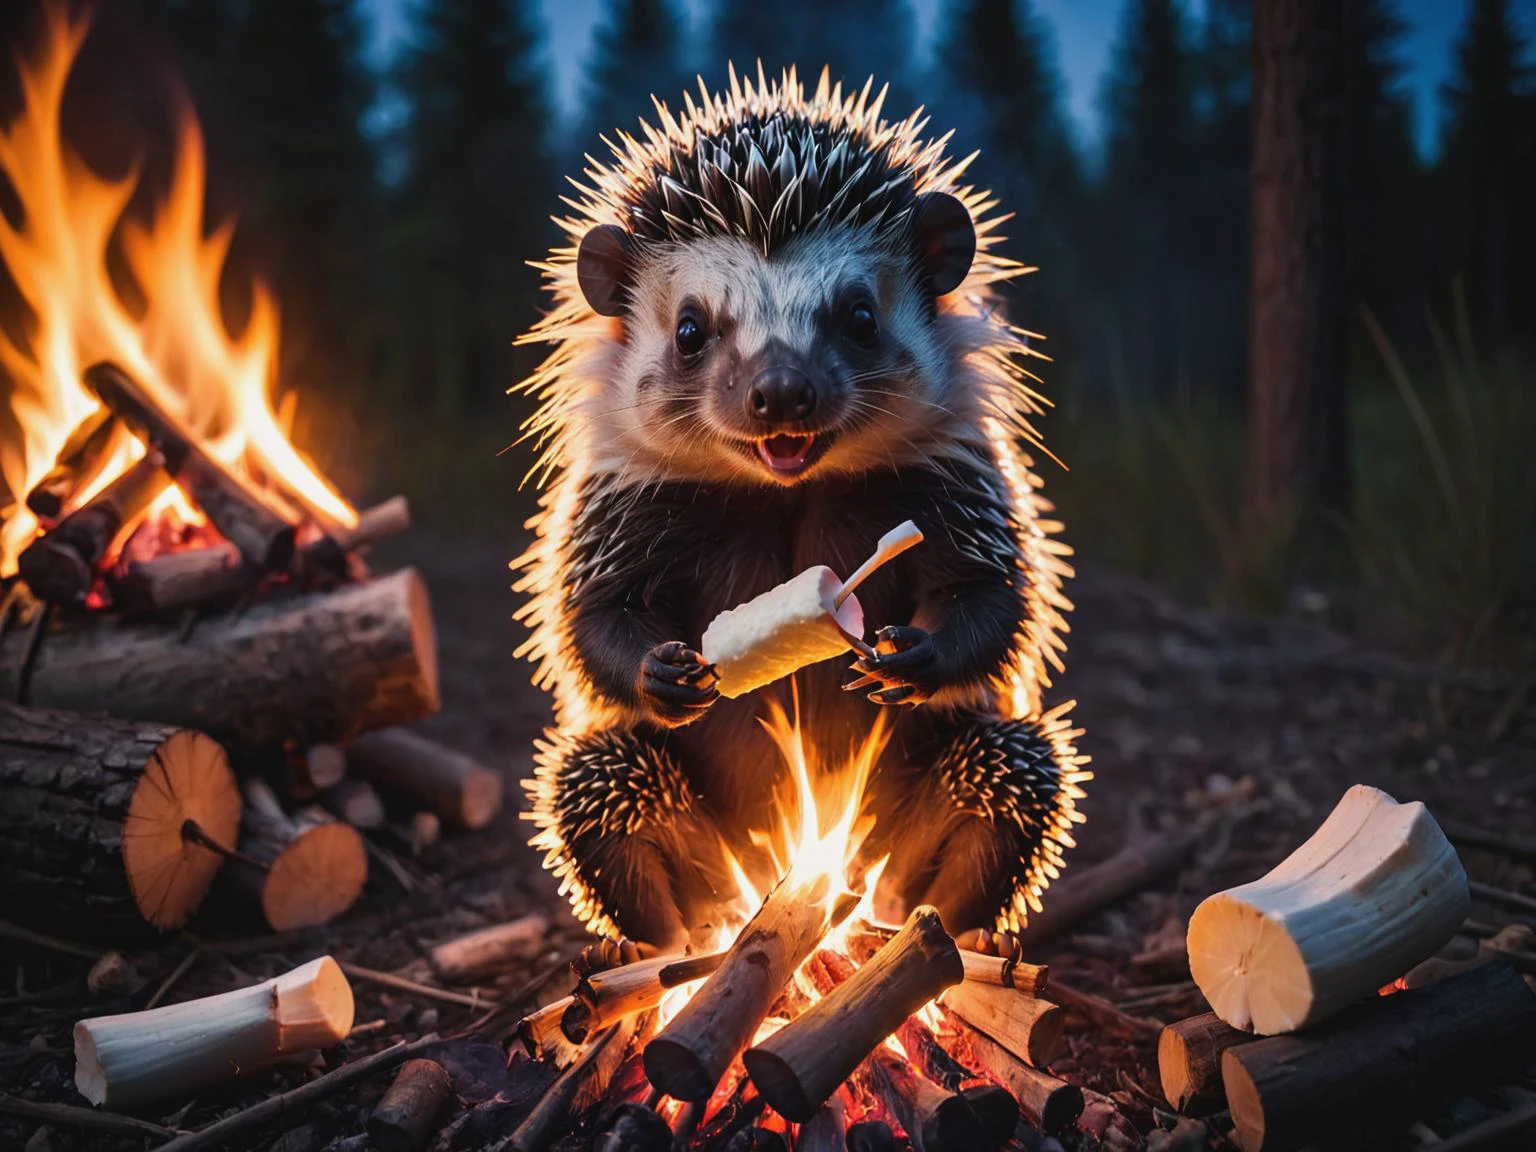 莱蒂布恩, 豪猪坐在篝火旁烤棉花糖, 